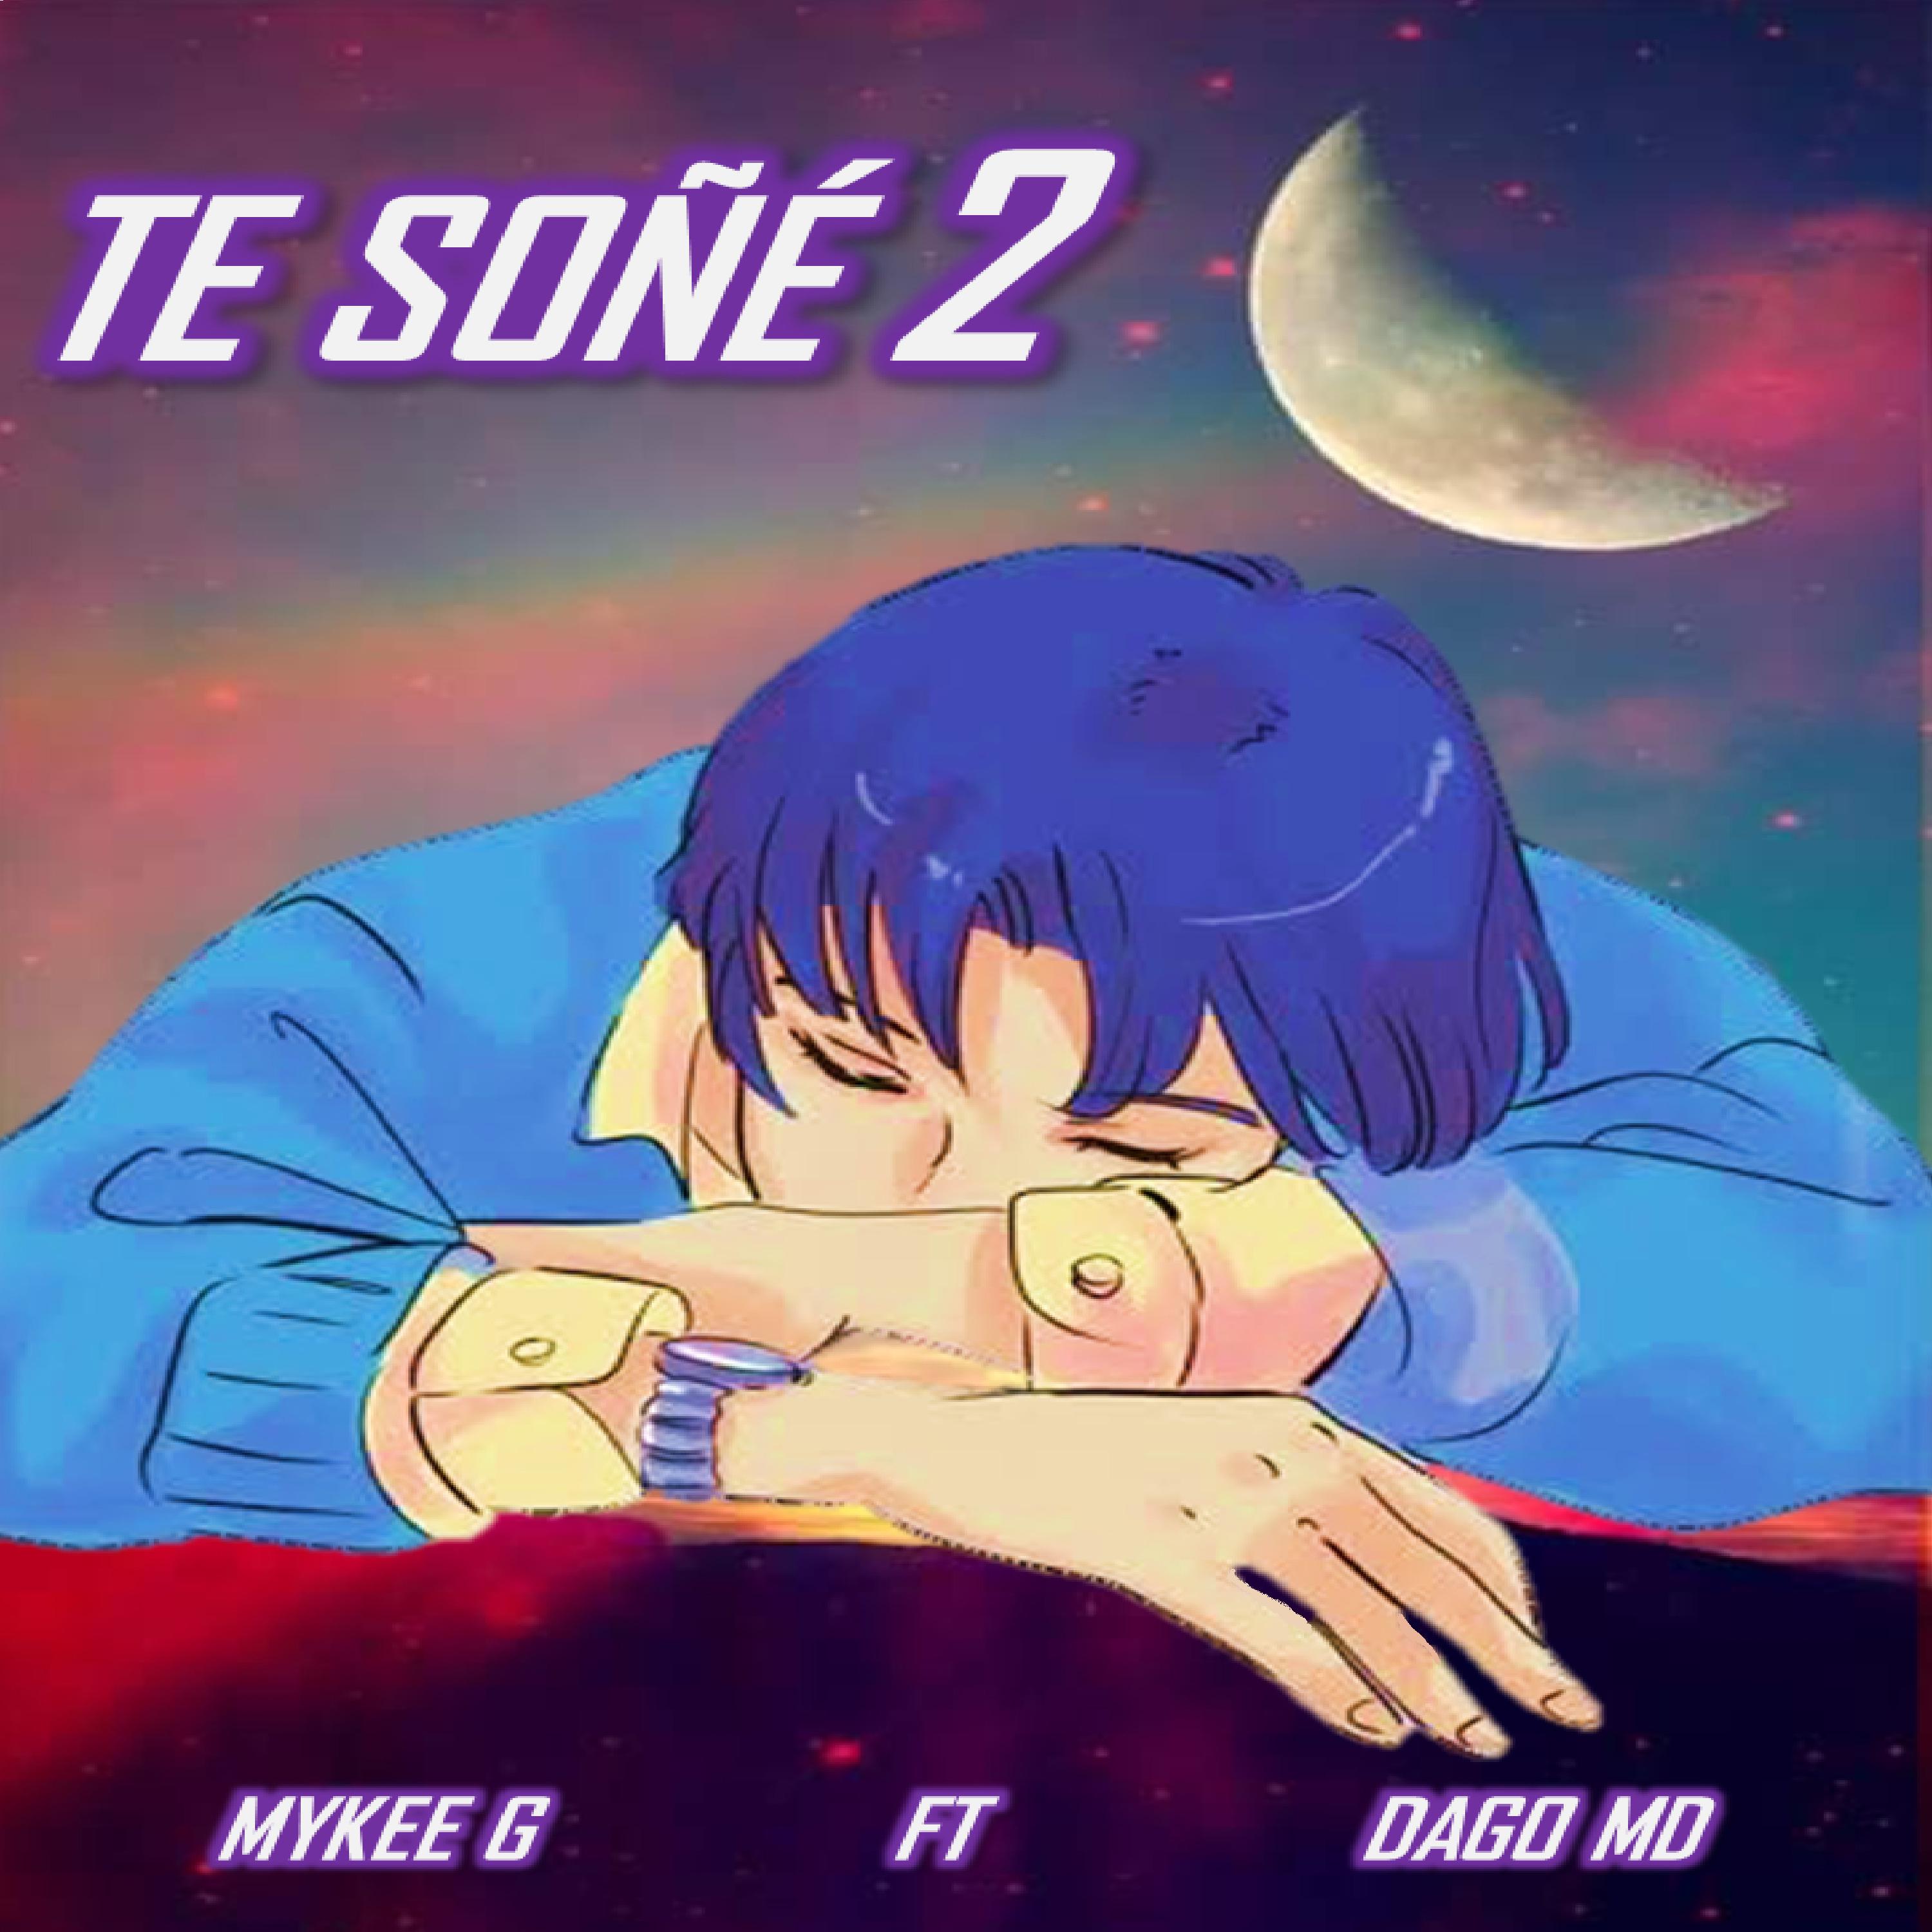 Mykee G - Te Soñé 2